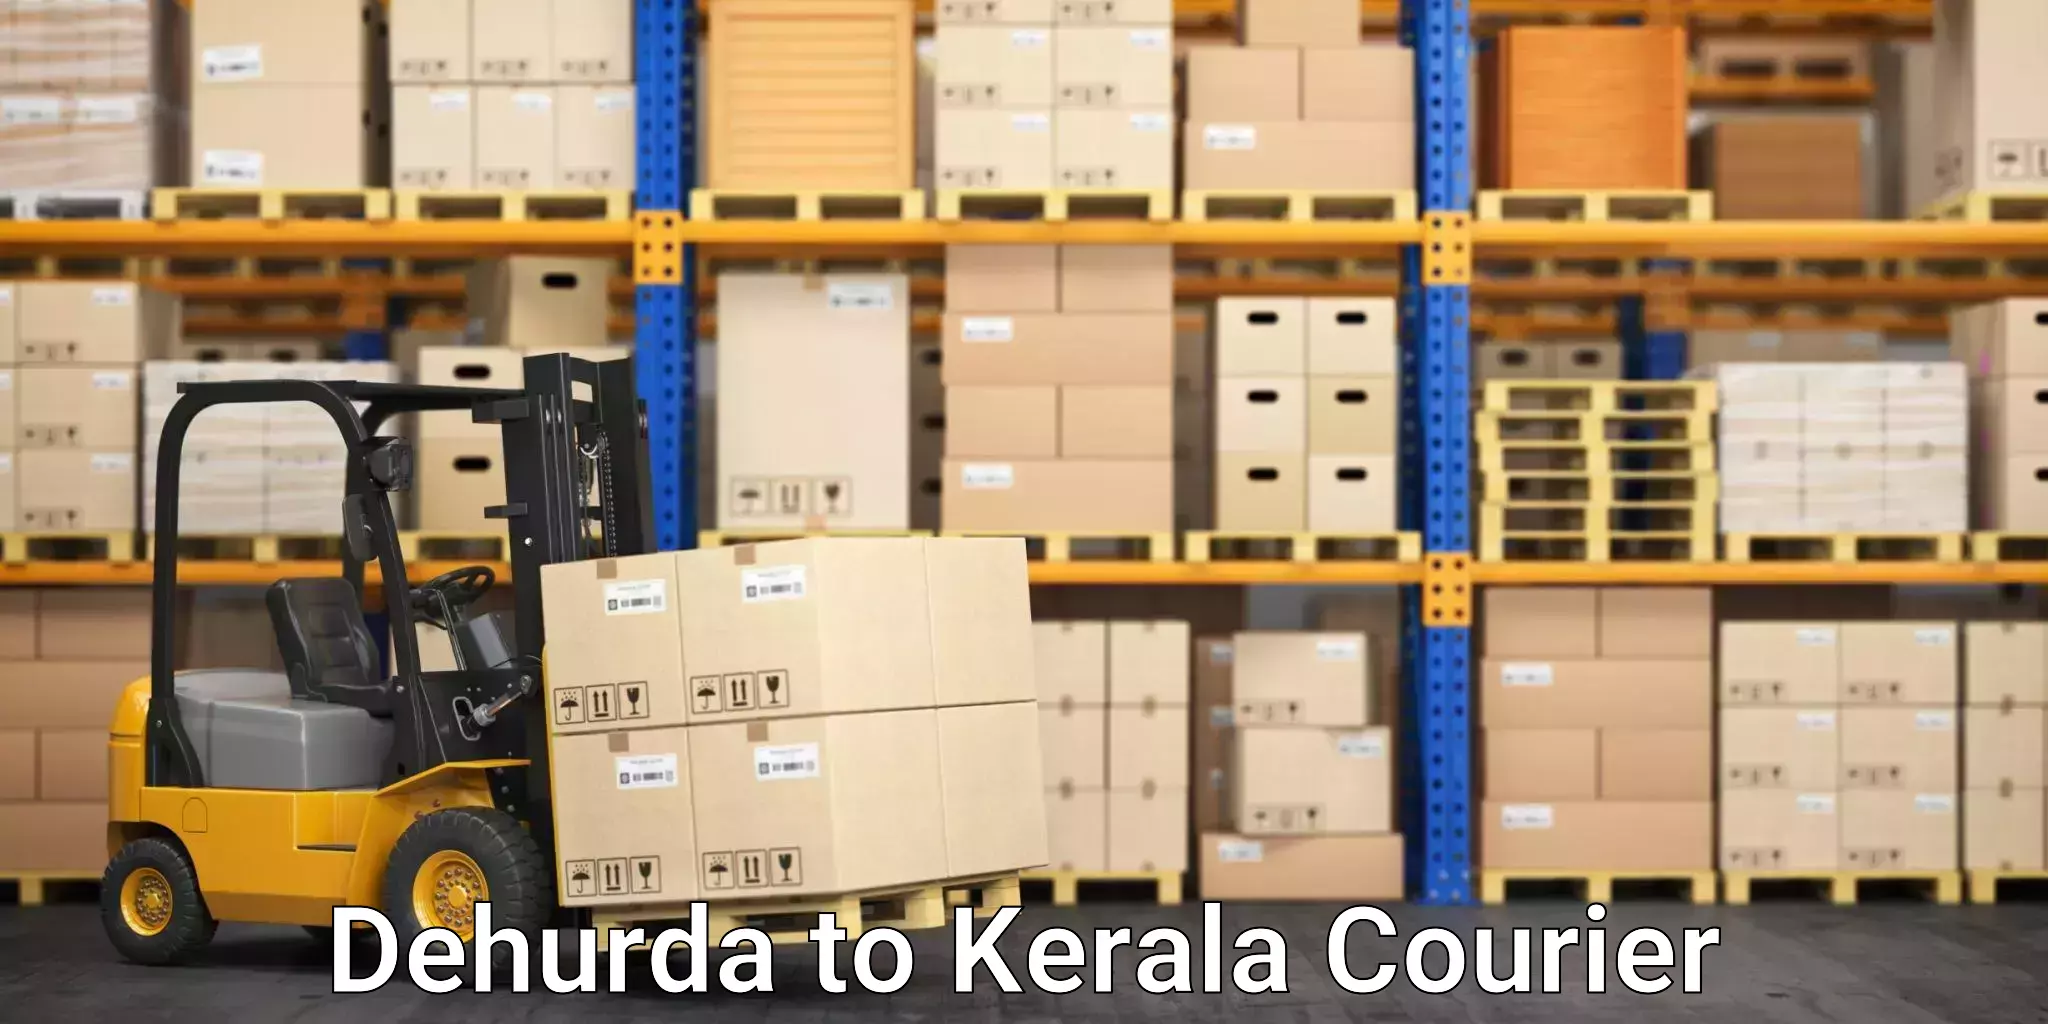 Courier service partnerships Dehurda to Peravoor